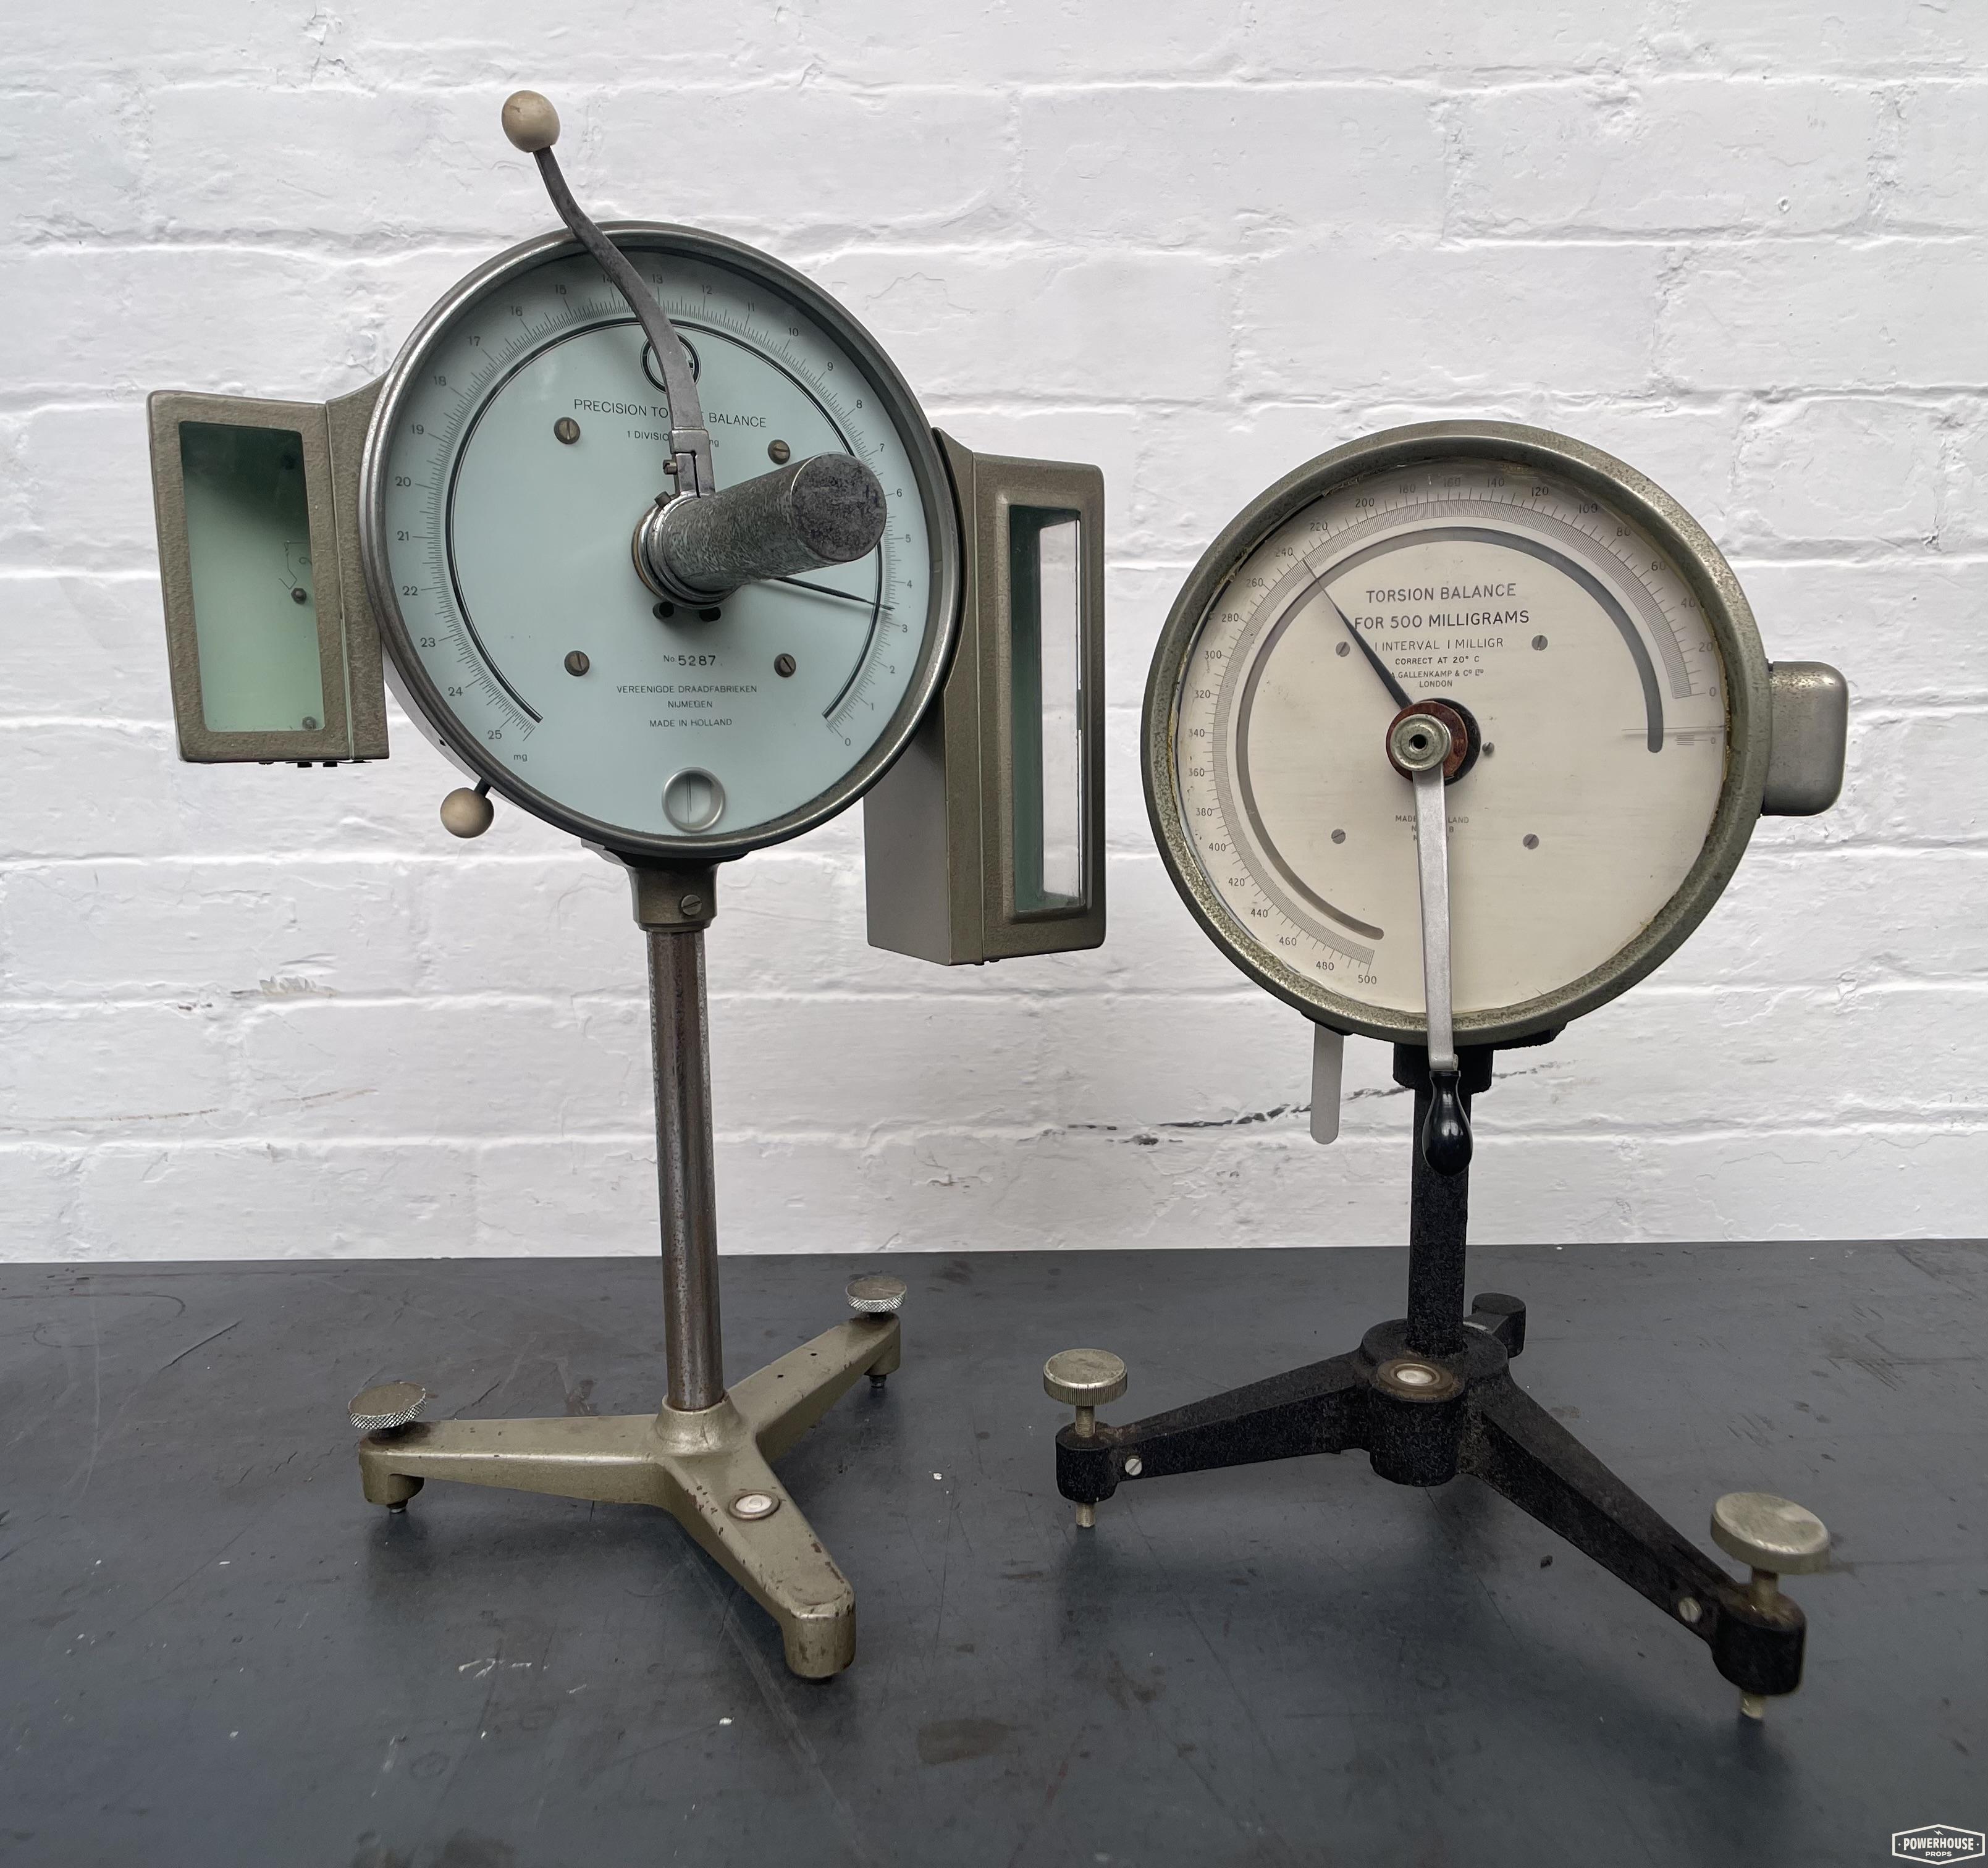 Powerhouse props prop hire rental vintage industrial testing gauge dial equipment